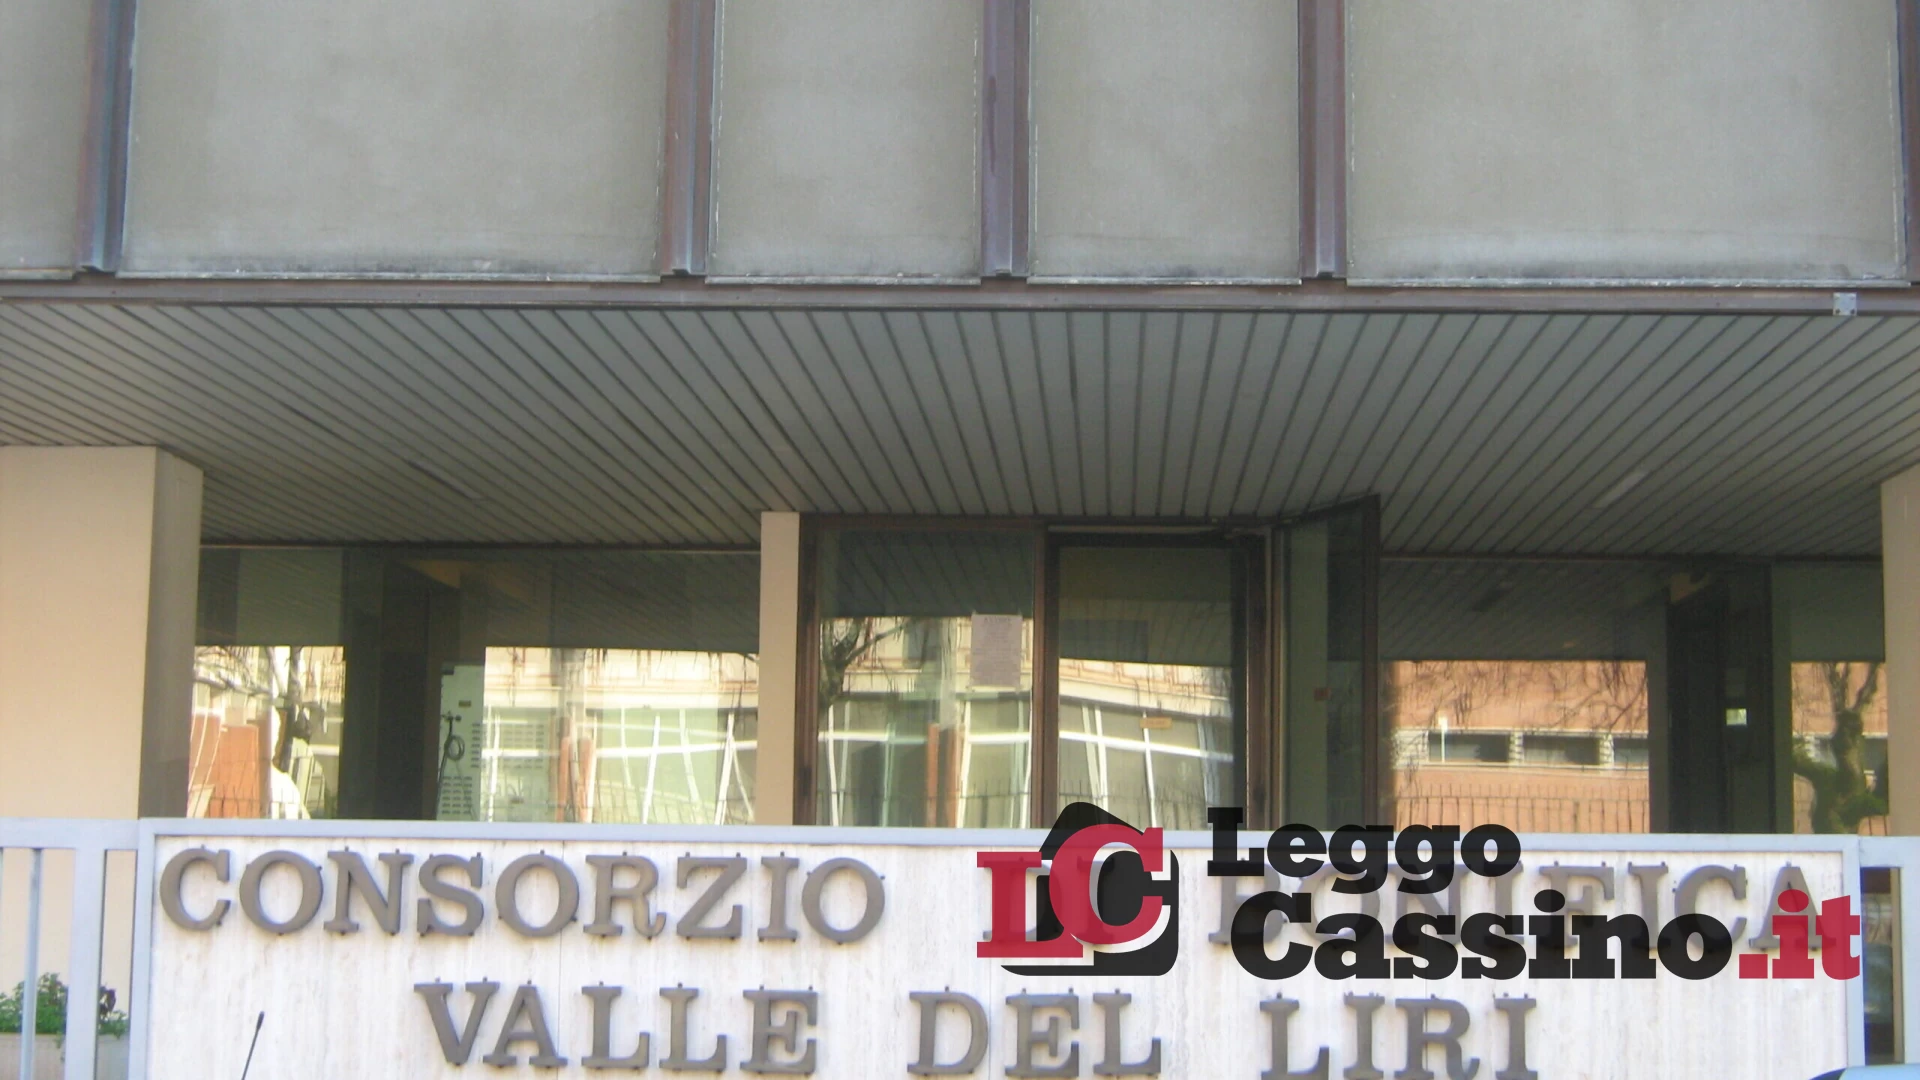 Tentato furto alla centrale di sollevamento del Consorzio Valle del Liri a Cassino